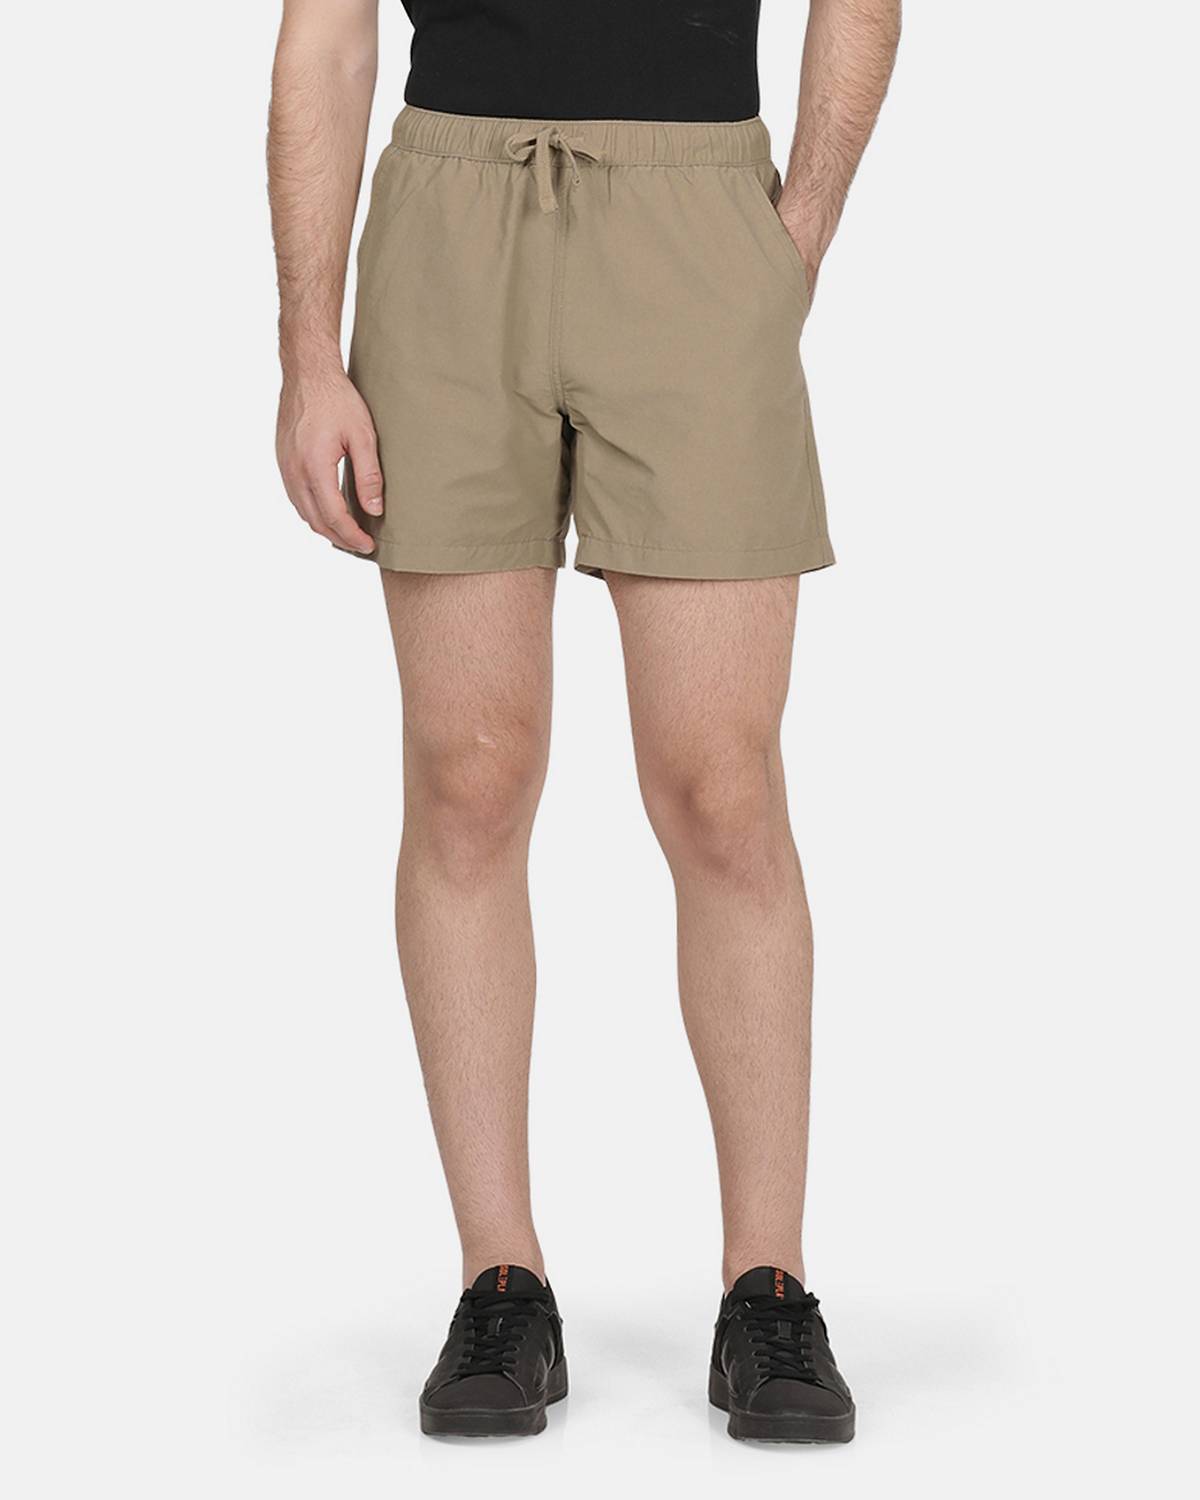 Men's Shorts - Cargo Shorts, Chino Shorts & Running Shorts